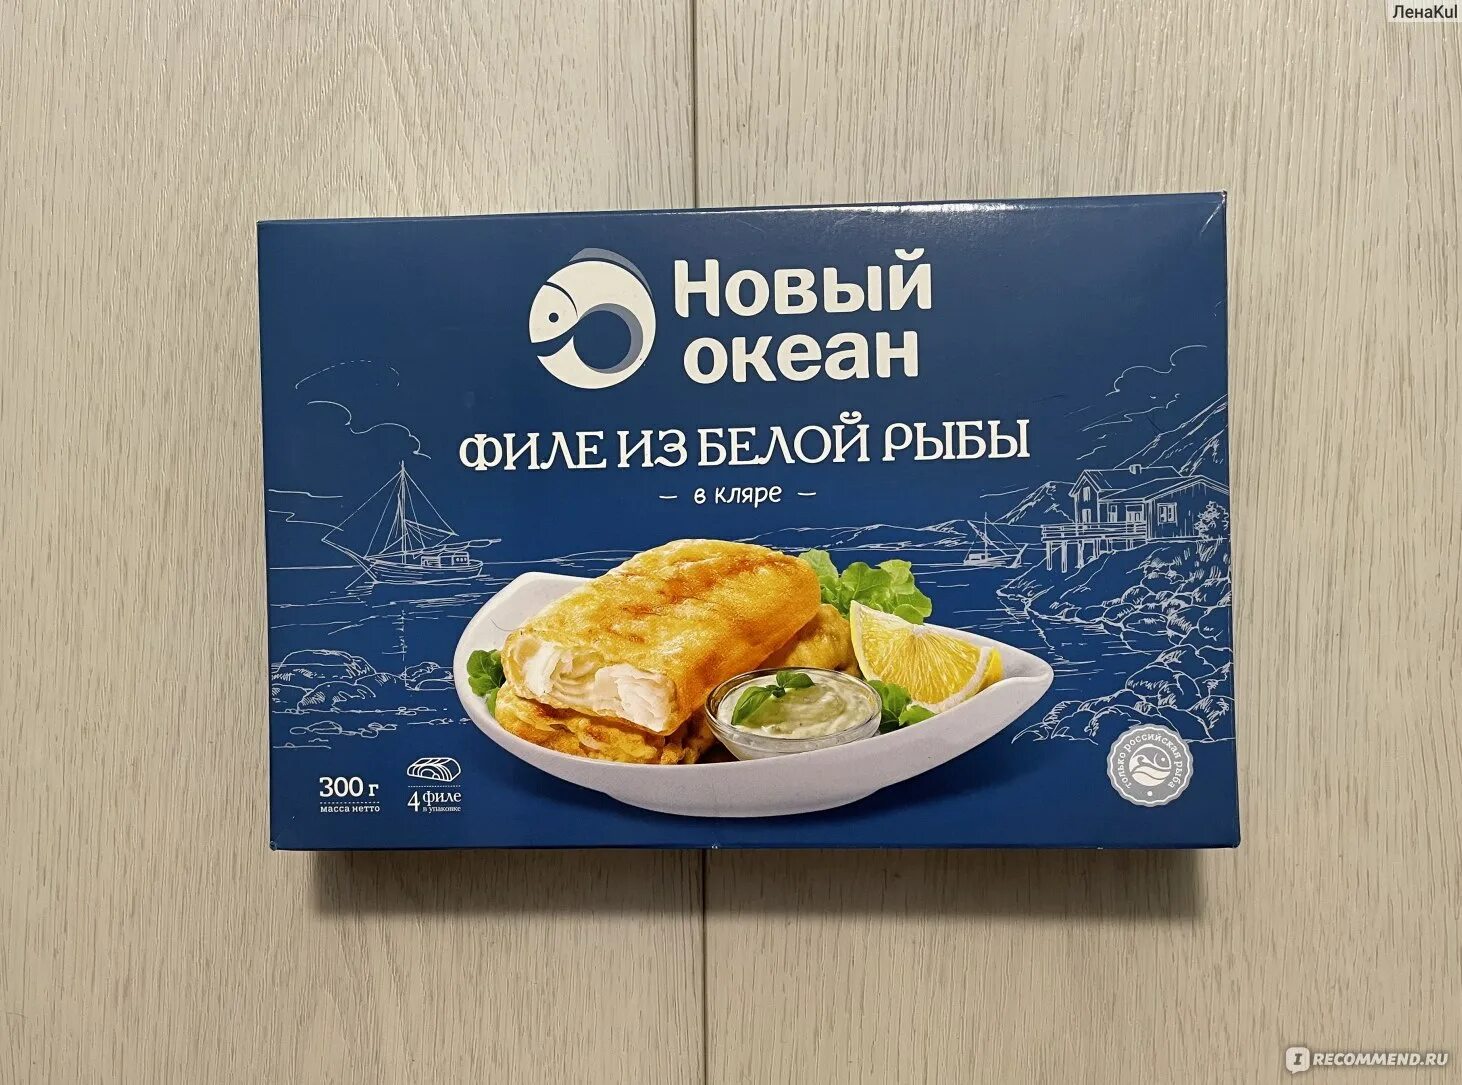 Перекресток бренд. Ешь вкусно реклама полуфабрикаты рыба. Новинка продукт.